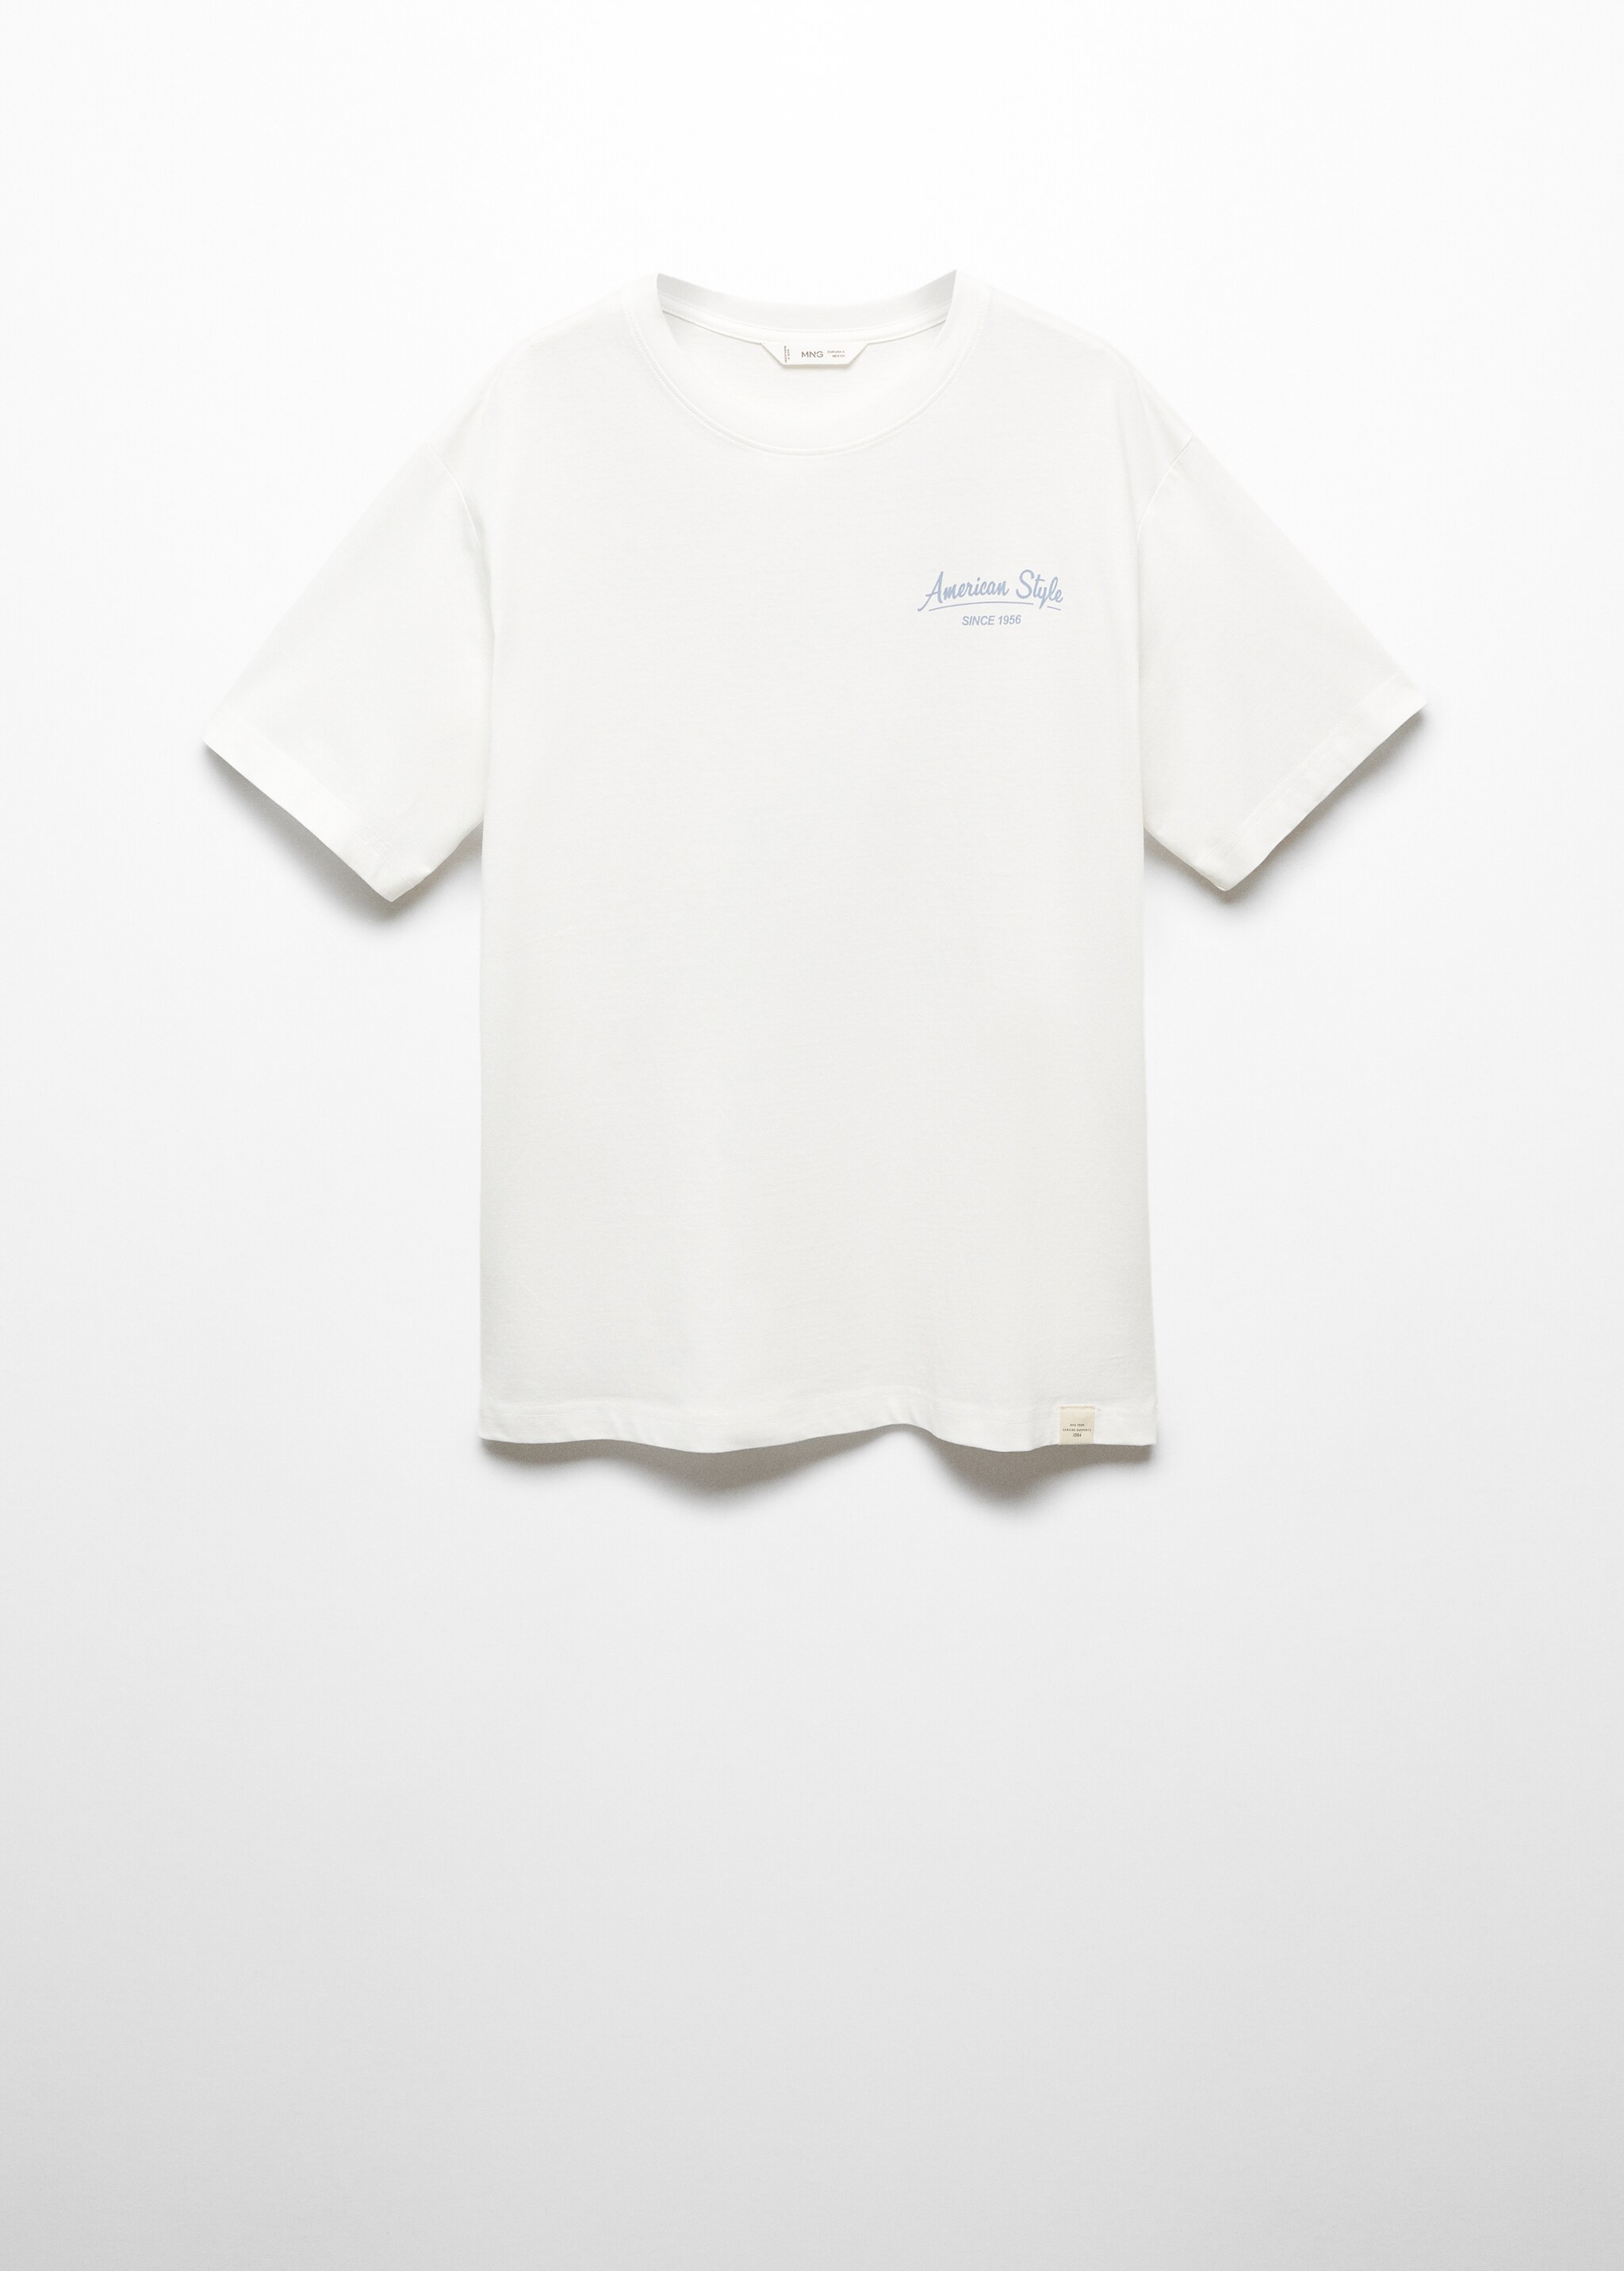 Camiseta algodón mensaje - Artículo sin modelo